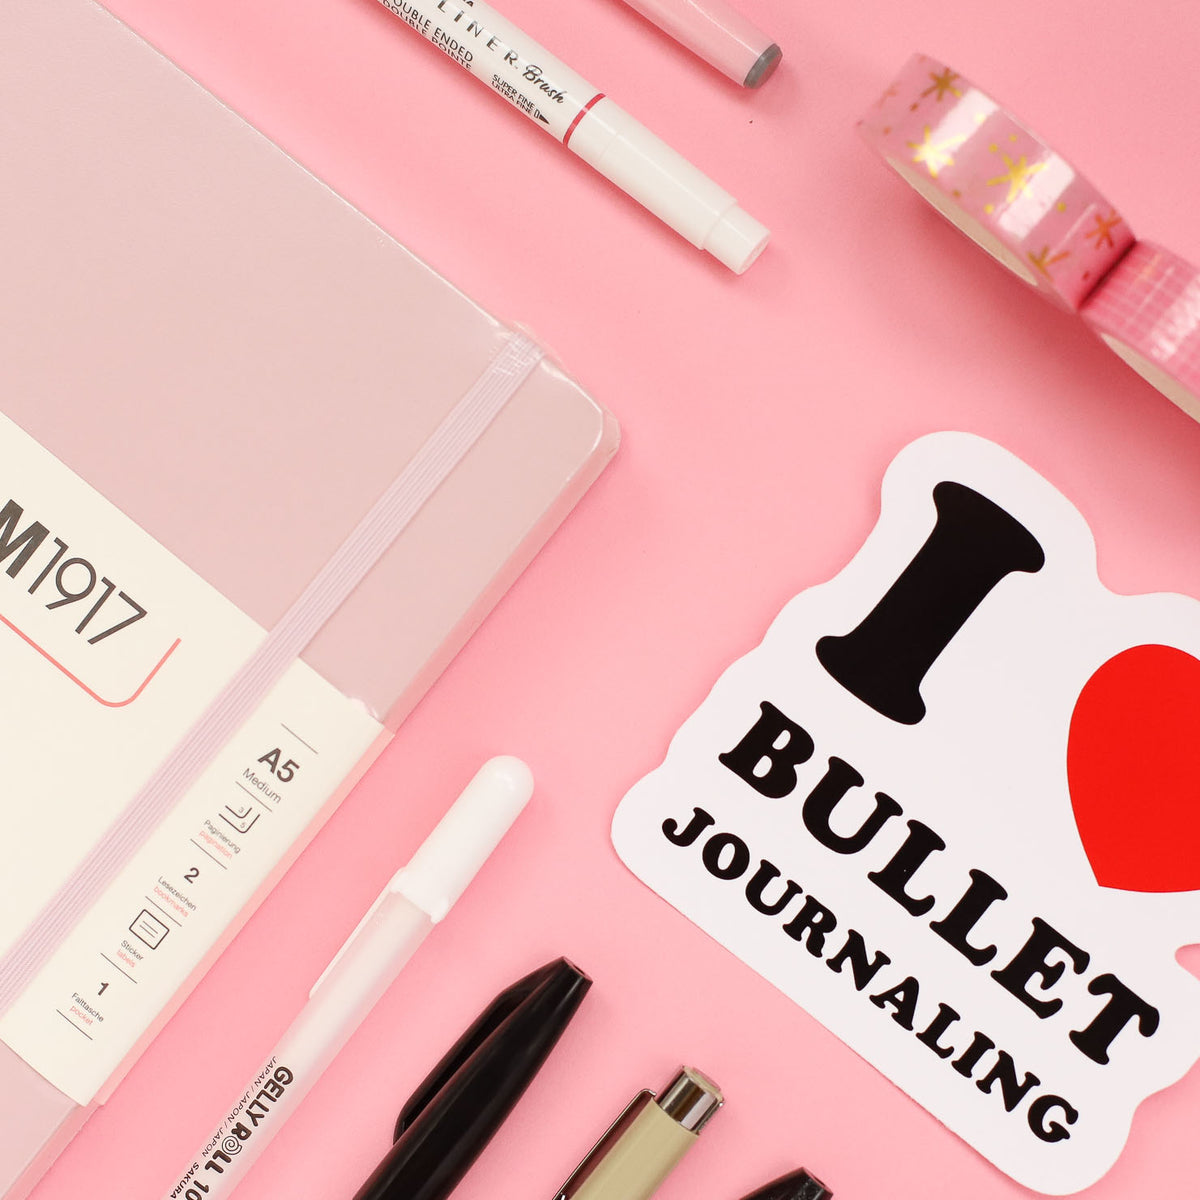 Best Bullet Journal Supplies for Beginners